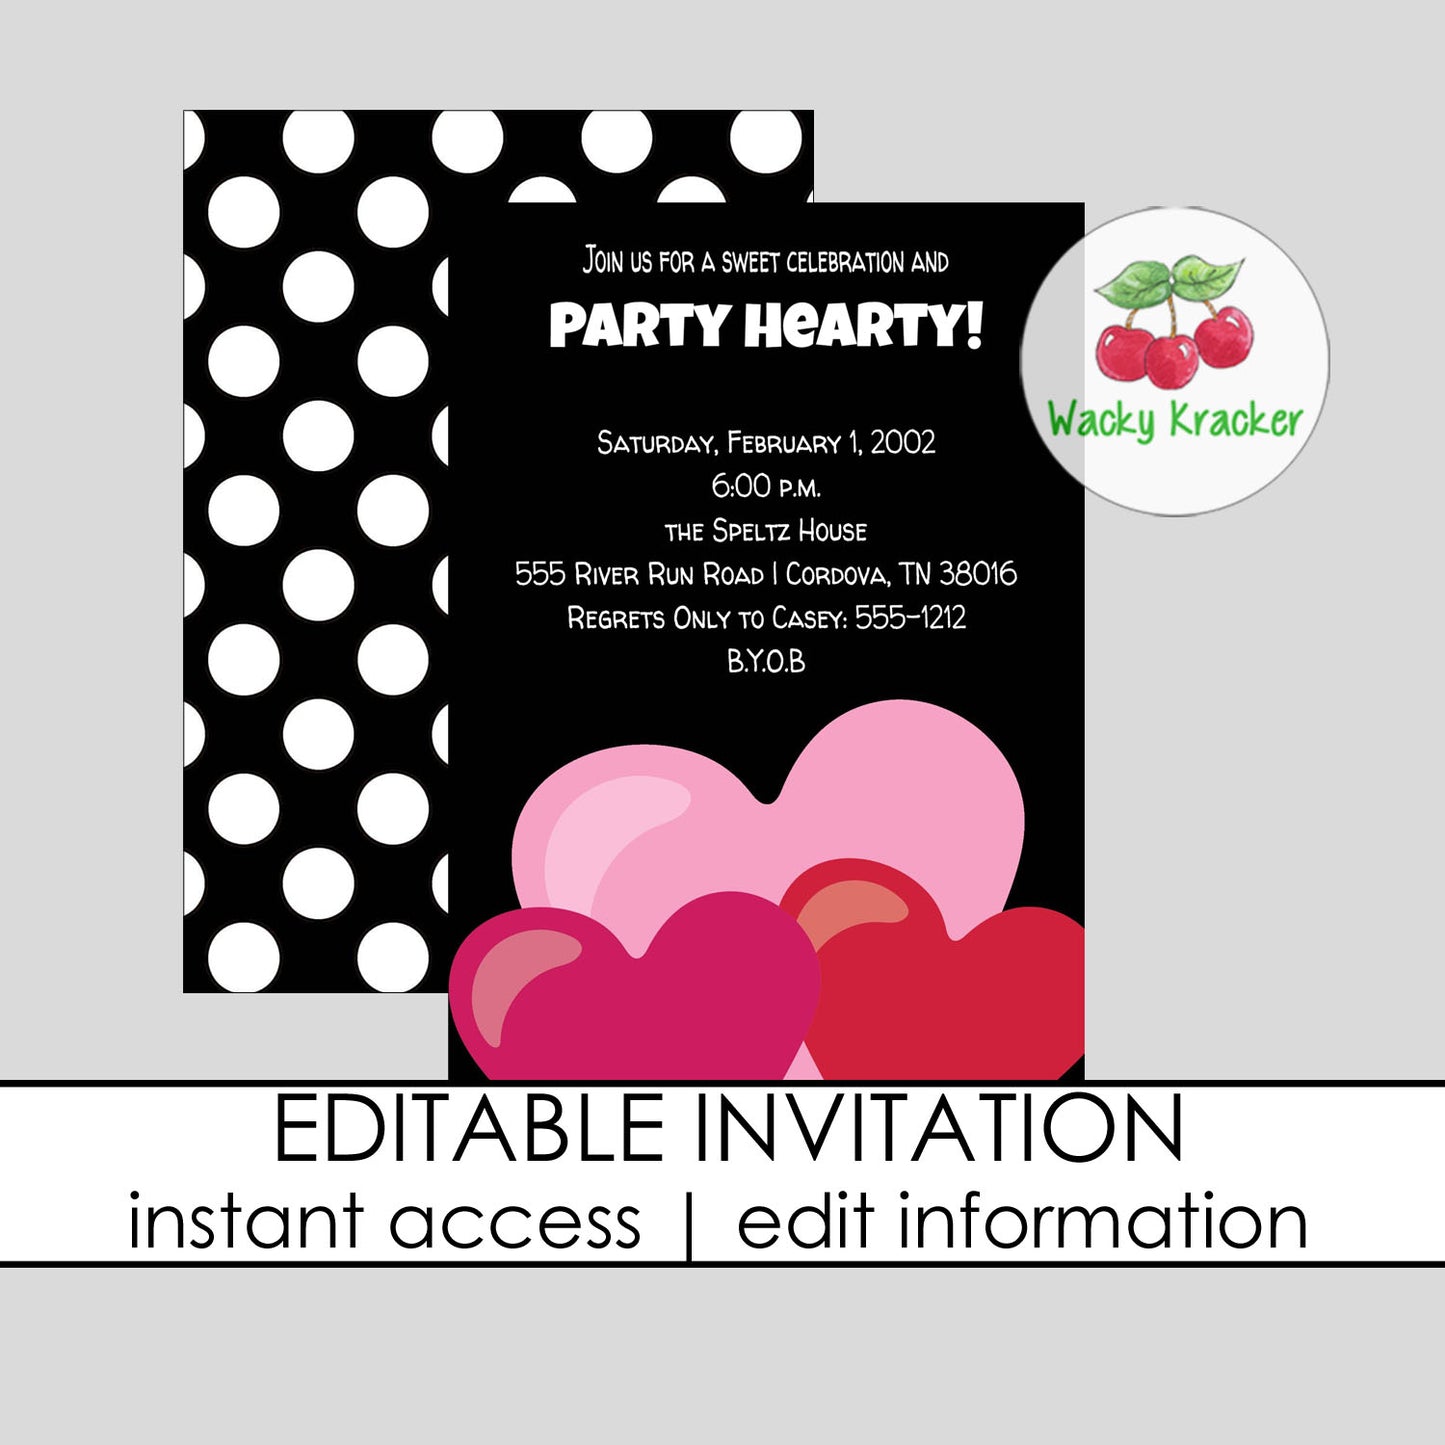 Party Hearty Invitation